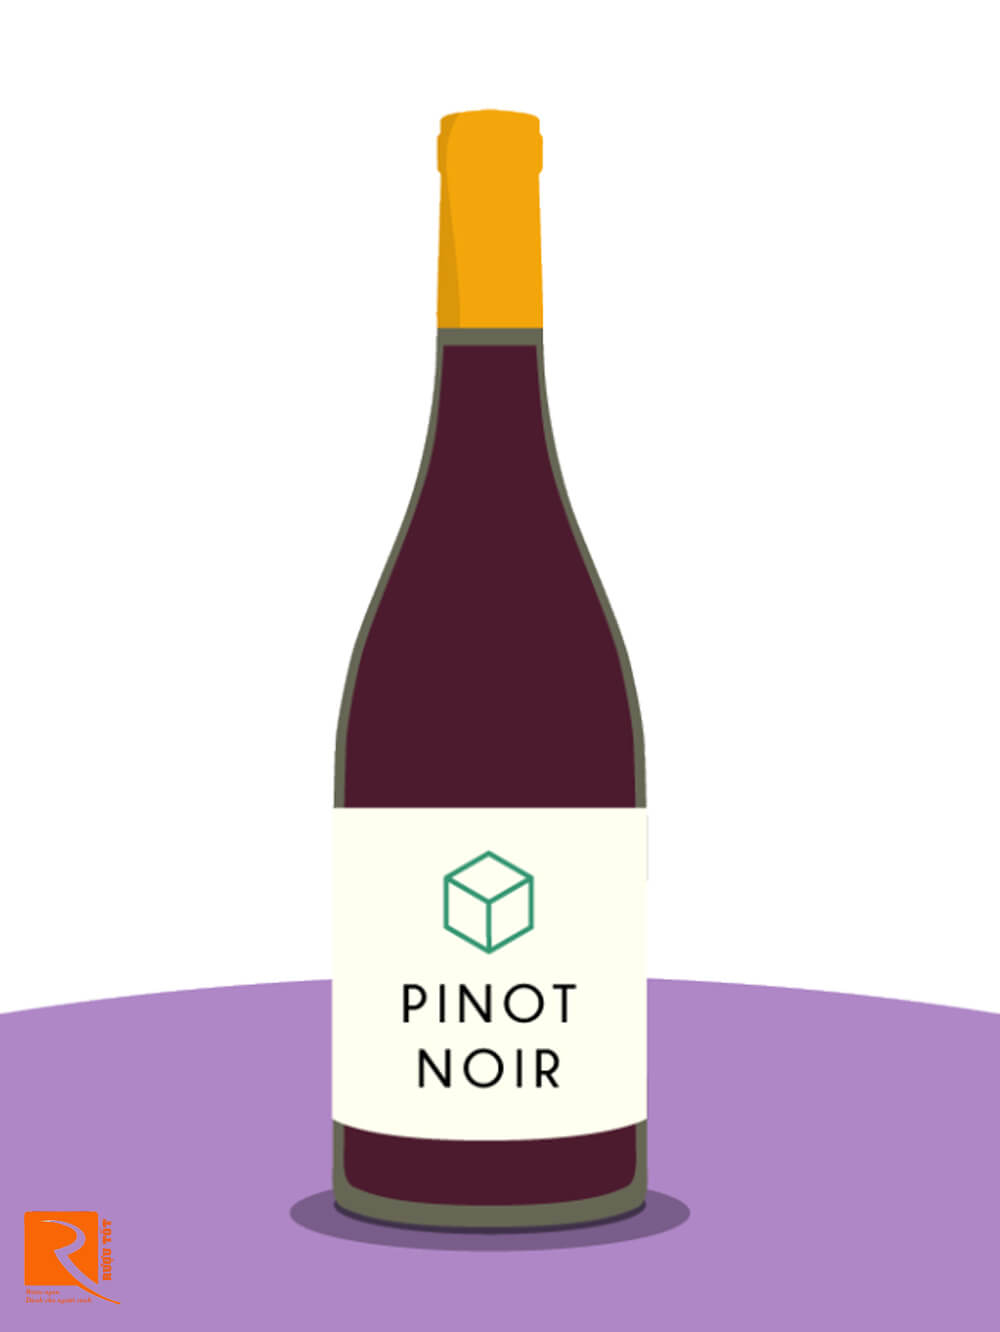 Nếu bạn yêu thích Pinot Noir thì